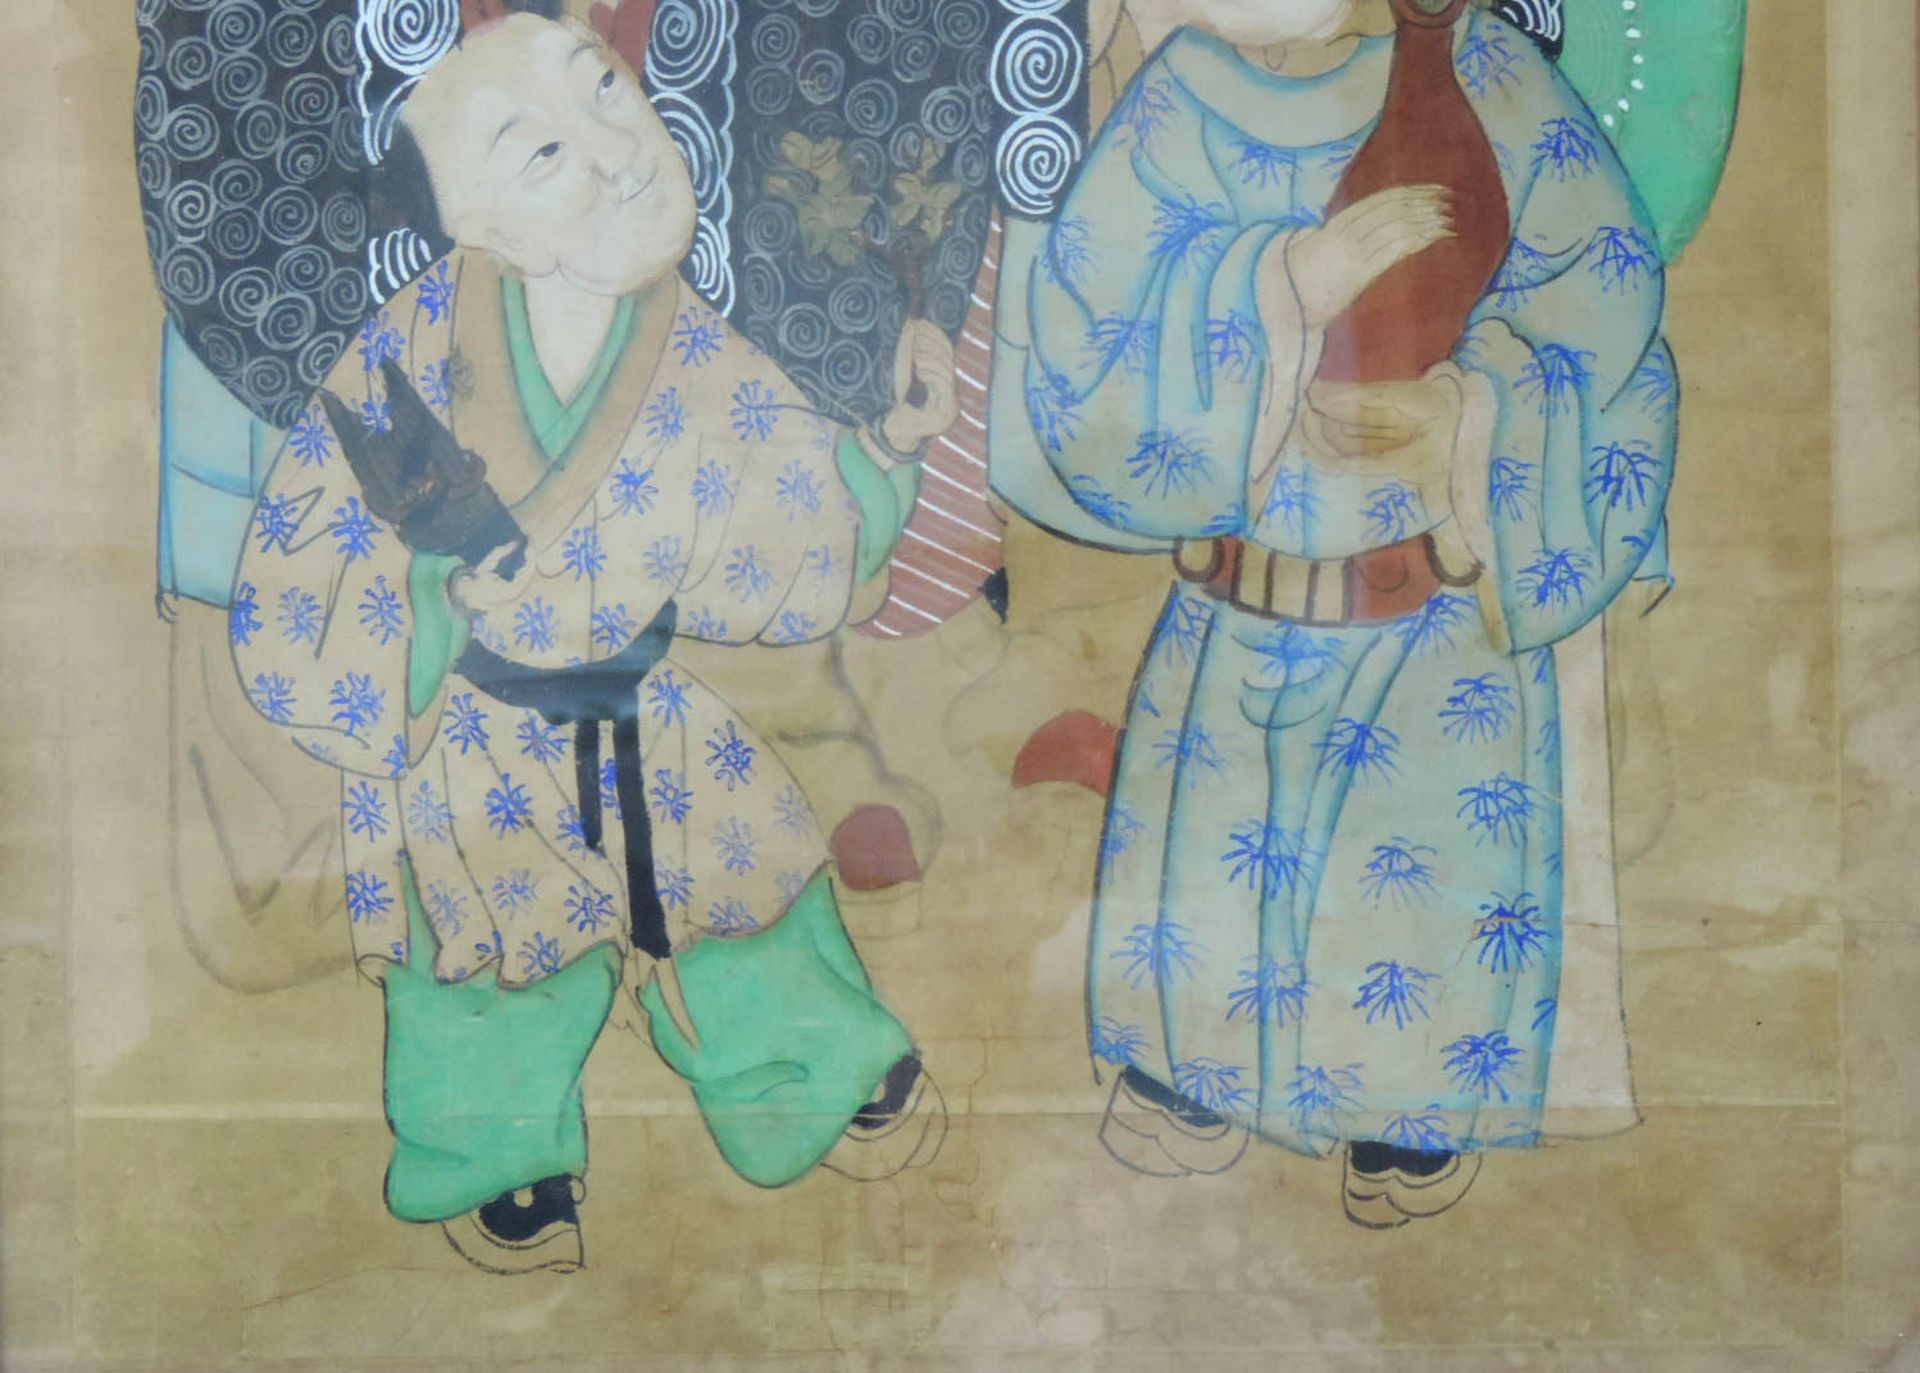 Aquarell mit verschiedenen Göttern und historischen Figuren, China/Japan.116 cm x 69 cm. Gemalt, - Bild 6 aus 6